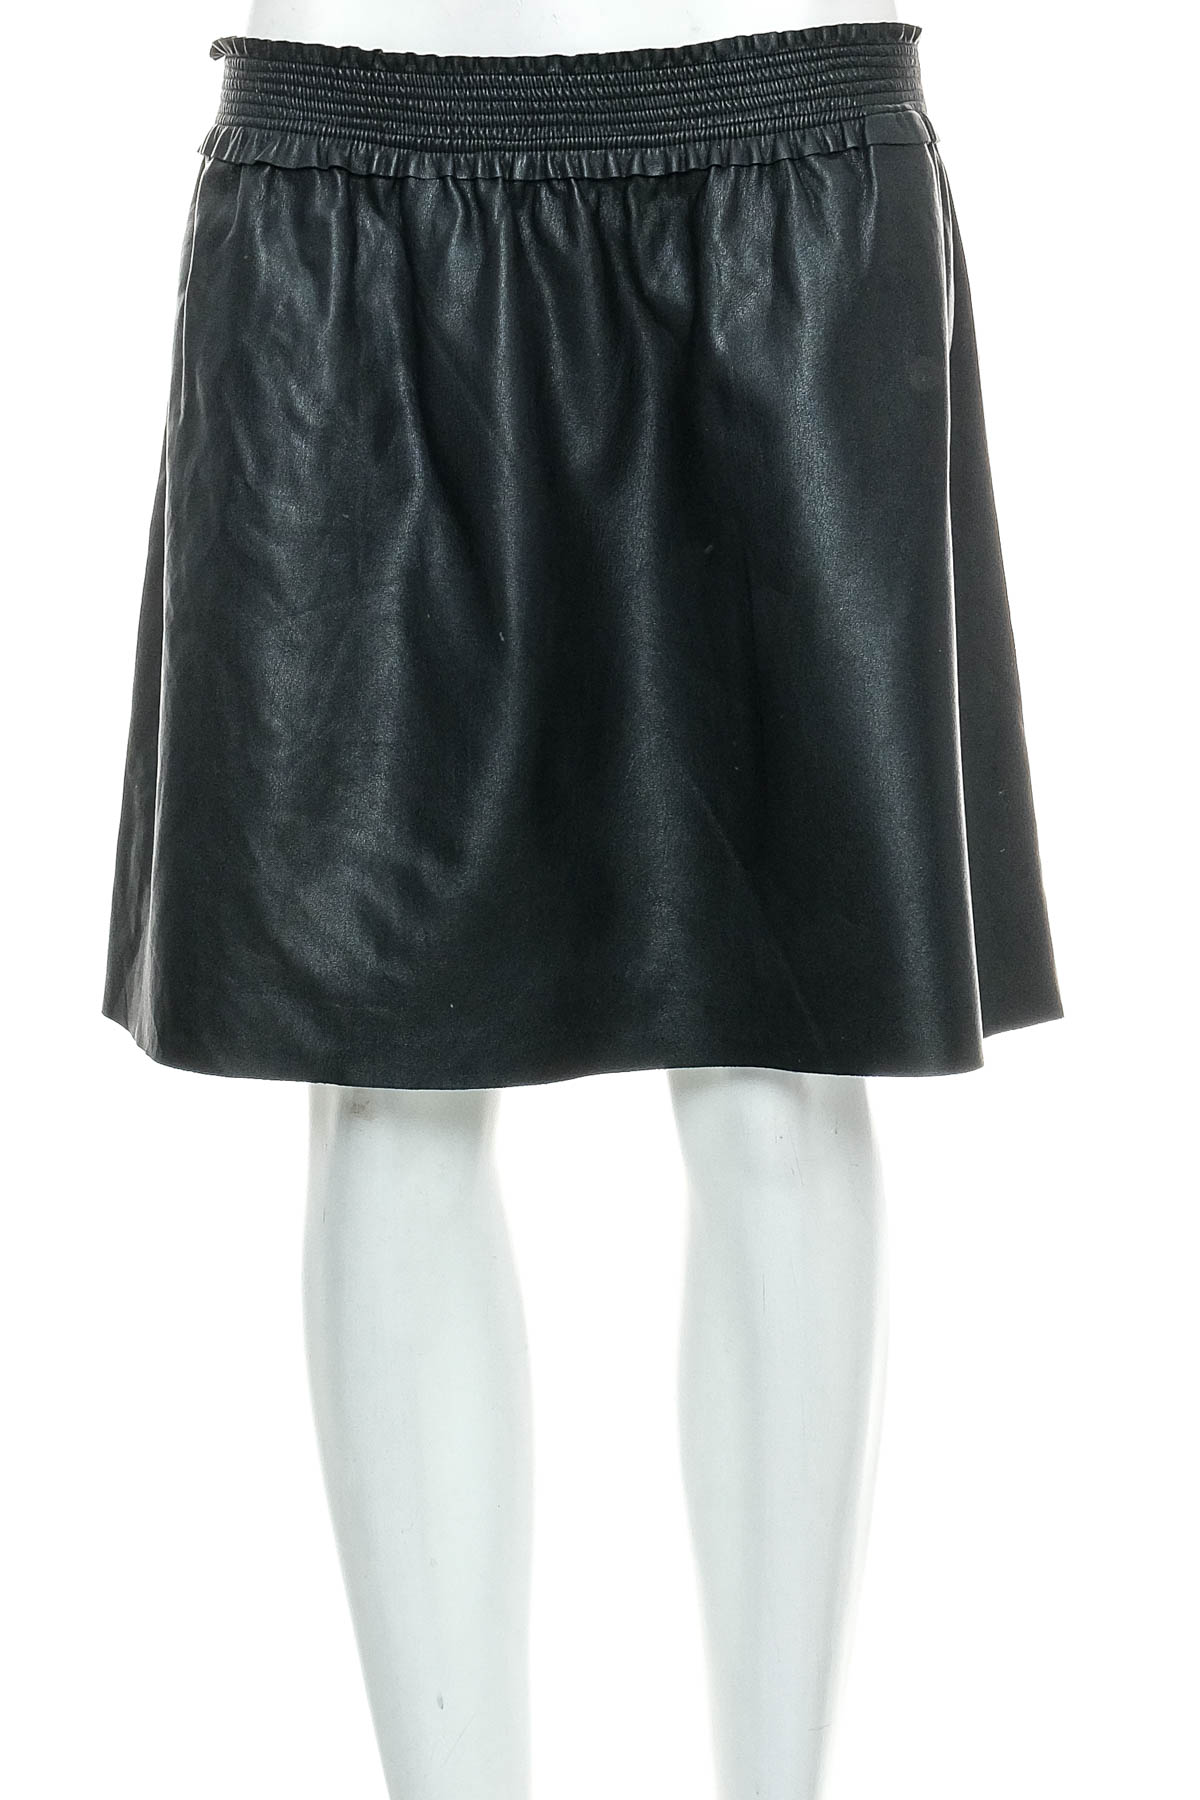 Leather skirt - YOUN! belgium - 0